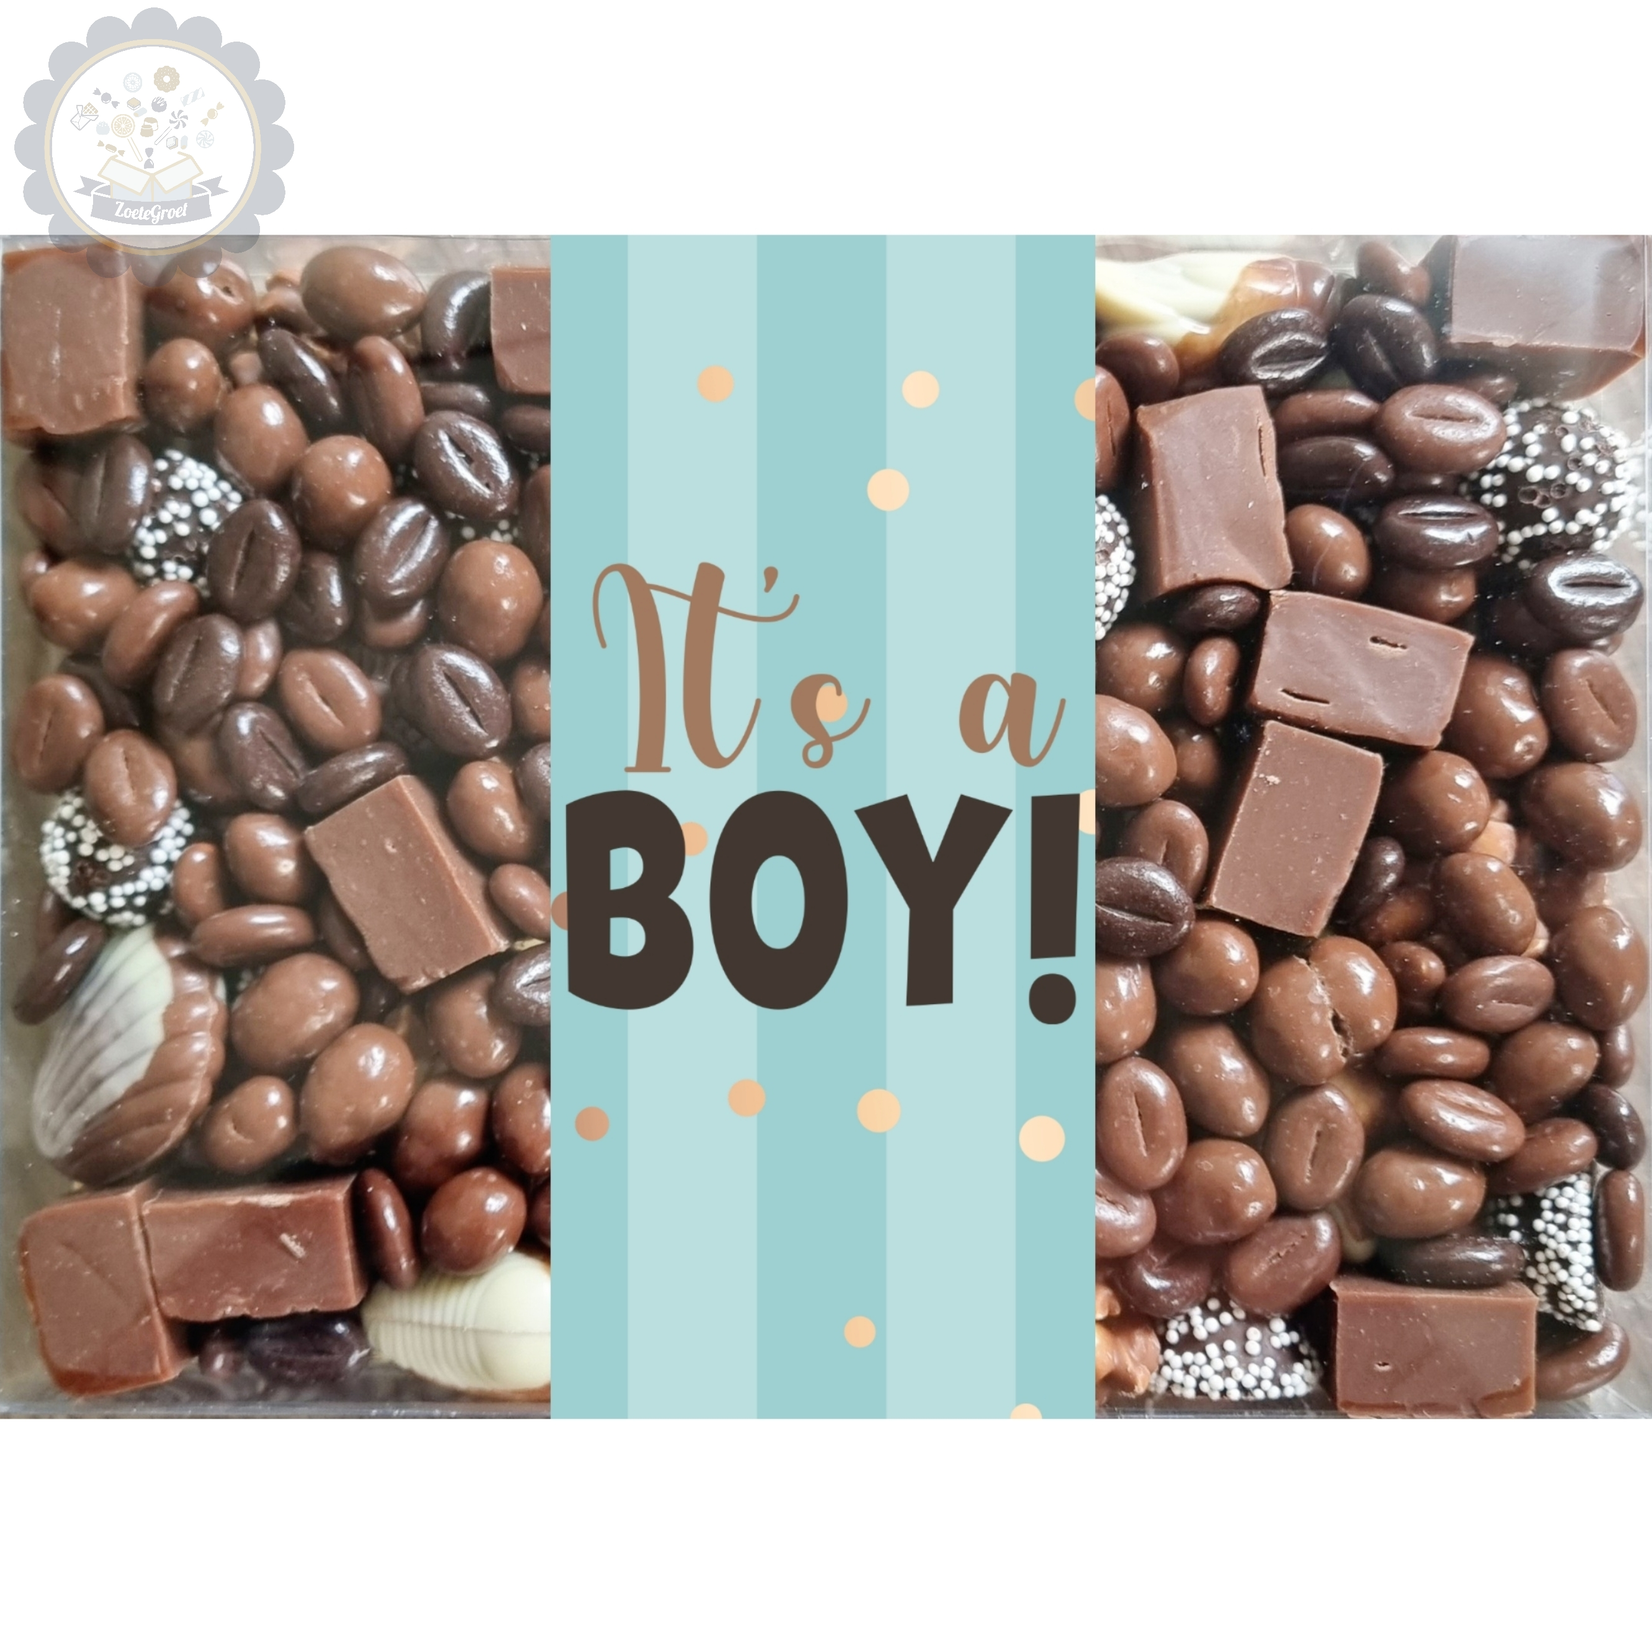 ZoeteGroet Medium Chocobox: It's a Boy!